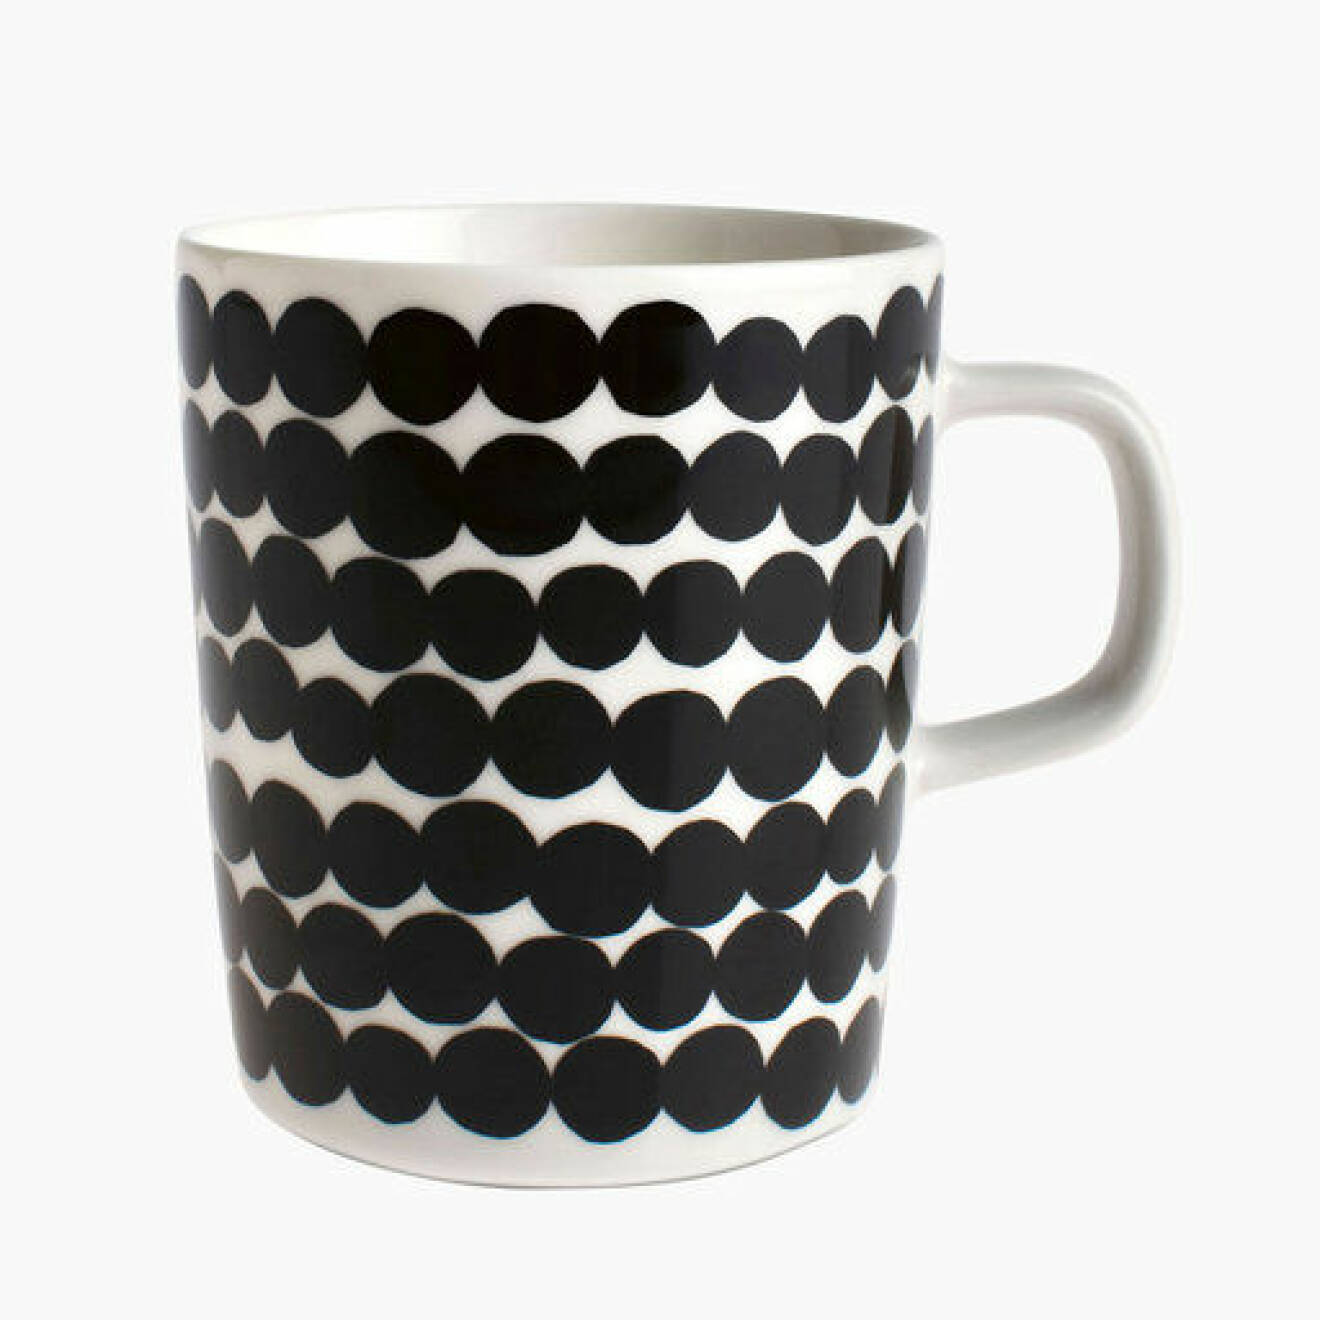 Kaffekopp, vit med svarta prickar på. Mugg från Marimekko.